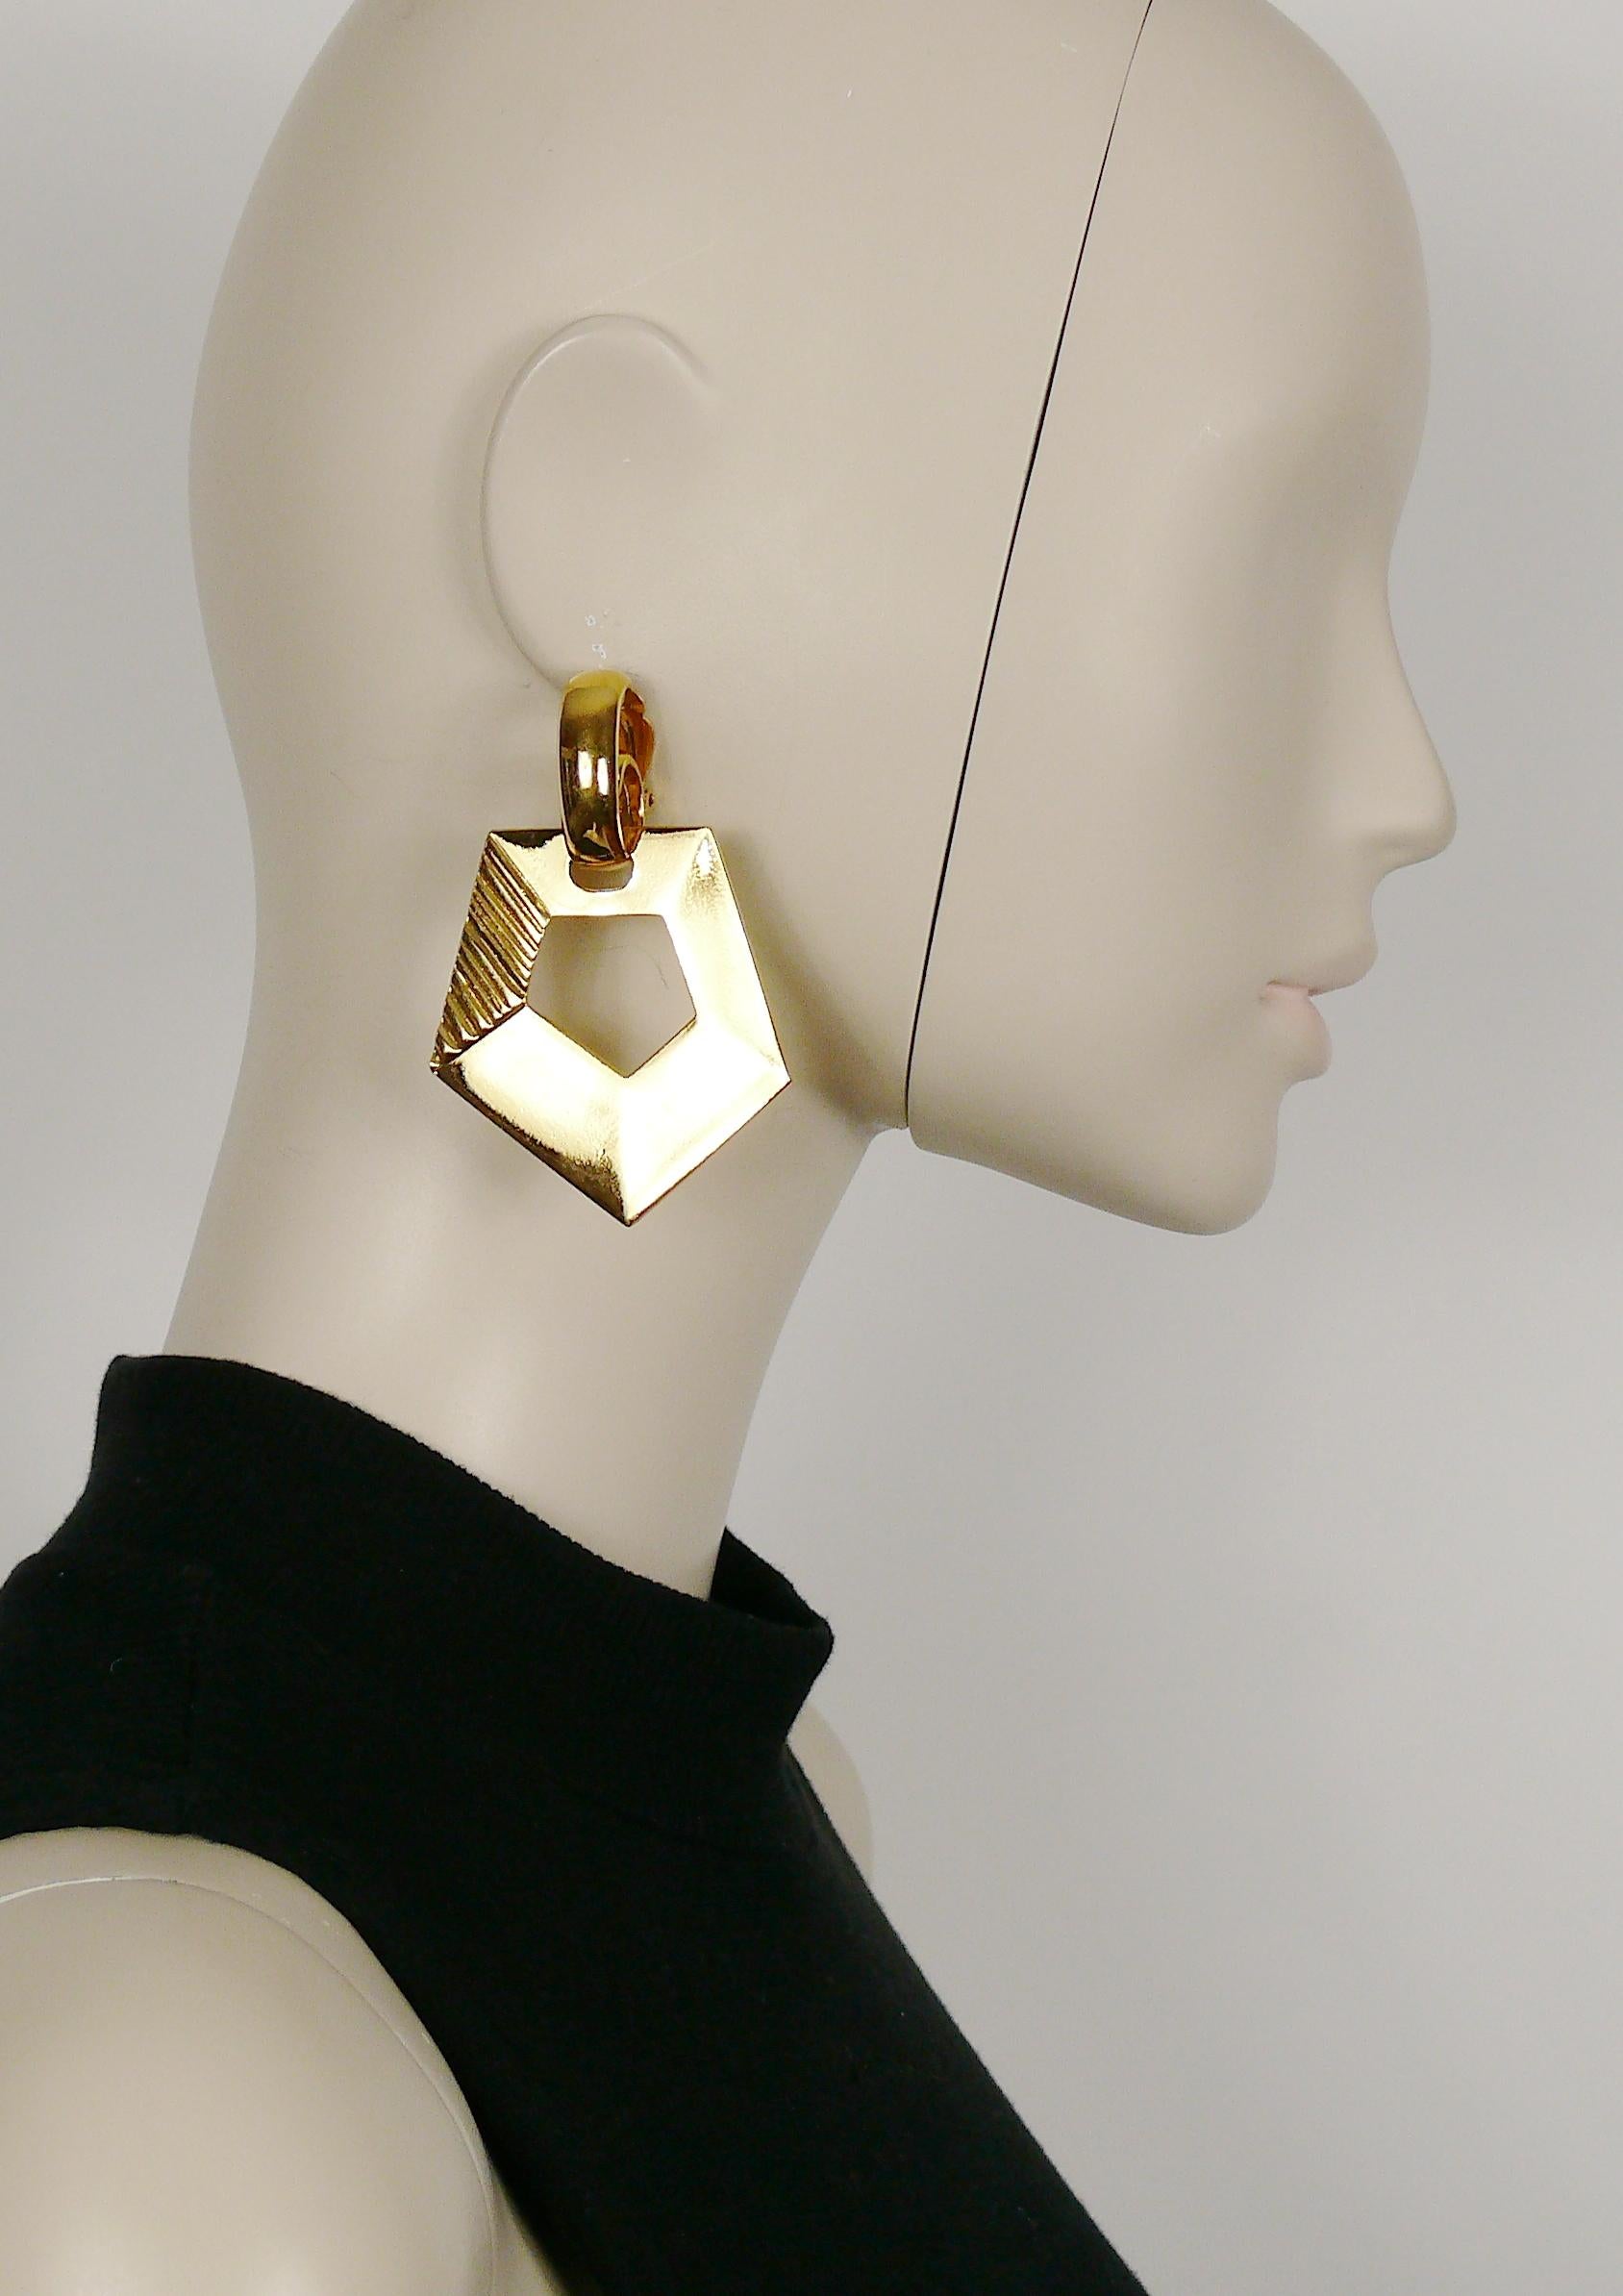 YVES SAINT LAURENT Vintage-Ohrringe aus massivem Gold mit geometrischem Muster (Clip-on).

Geprägtes YSL Made in France.

Ungefähre Maße: Höhe ca. 7,5 cm (2,95 Zoll) / max. Breite ca. 5,1 cm (2,01 Zoll).

Kommt mit Originalverpackung (gebrauchter